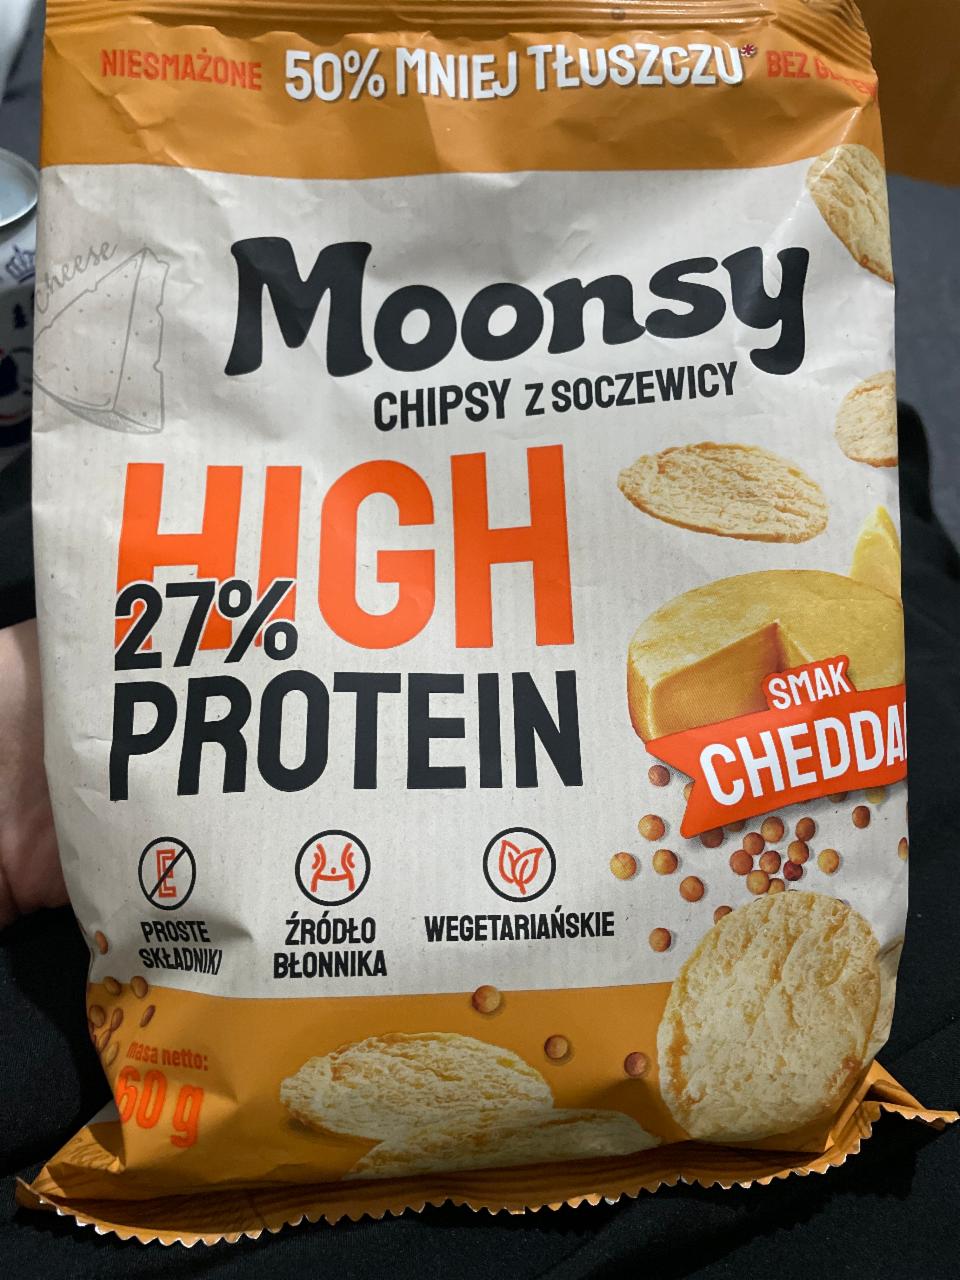 Zdjęcia - Moonsy Chipsy z soczewicy smak cheddar 60 g